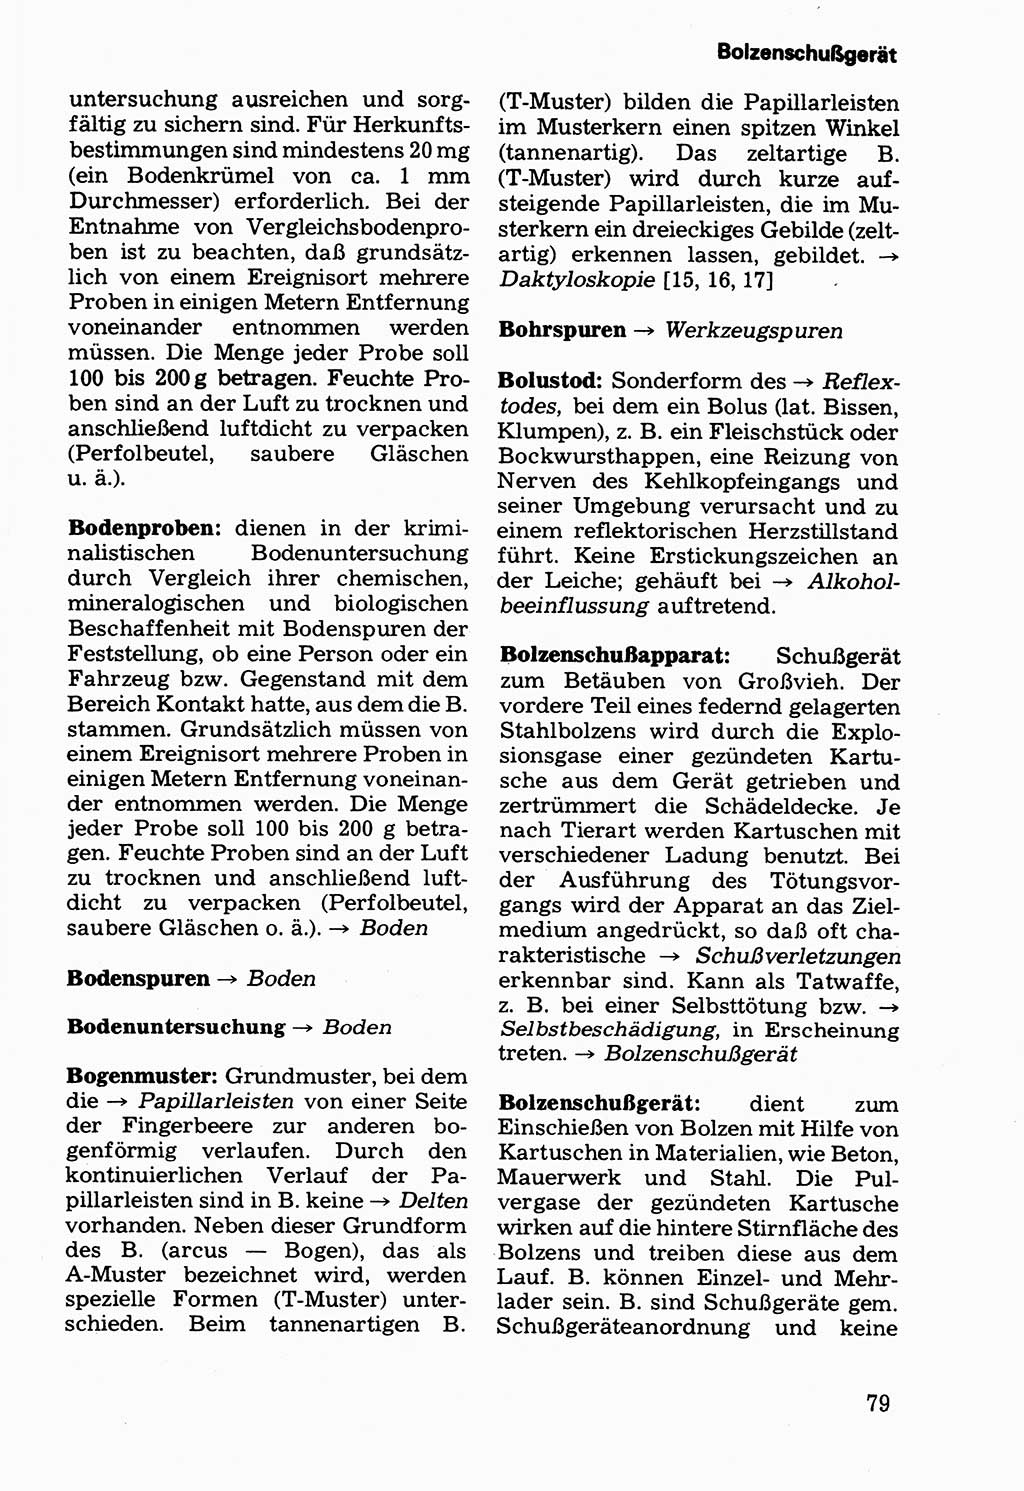 Wörterbuch der sozialistischen Kriminalistik [Deutsche Demokratische Republik (DDR)] 1981, Seite 79 (Wb. soz. Krim. DDR 1981, S. 79)